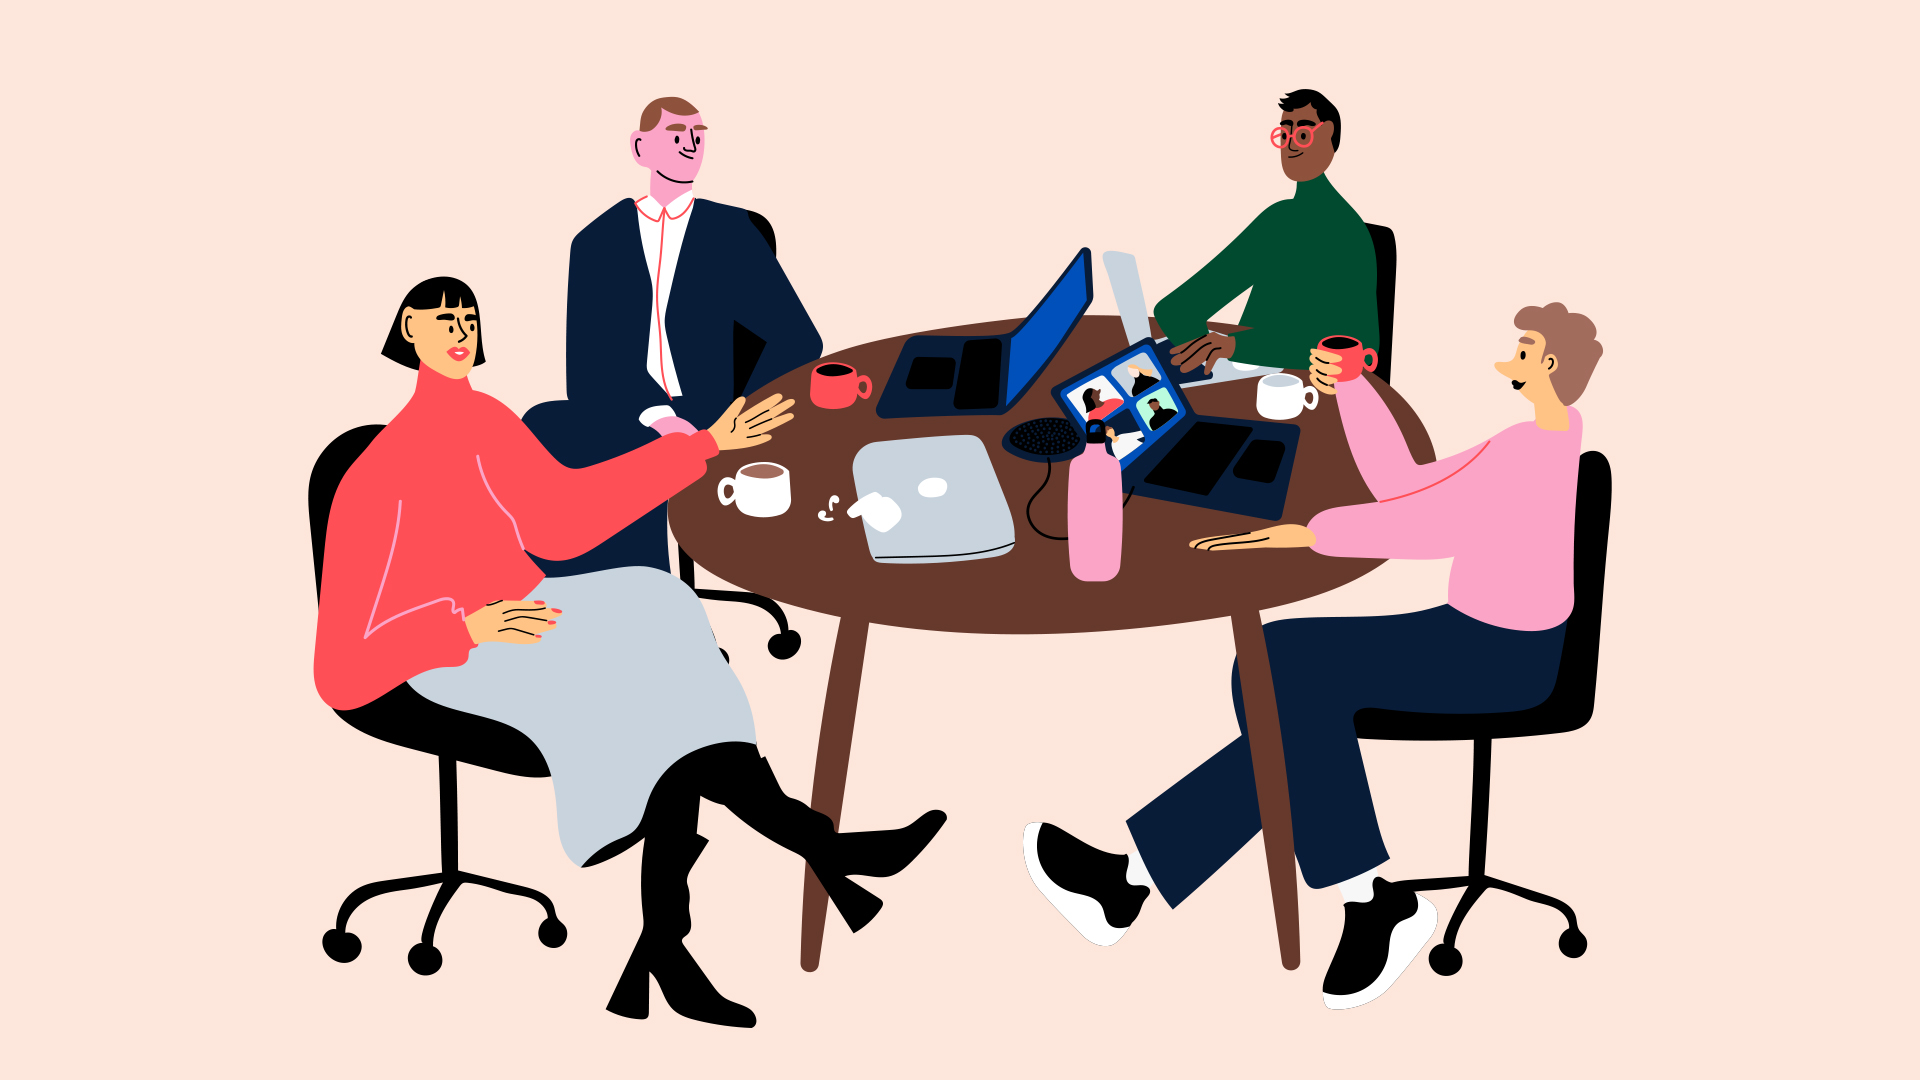 Piirroskuva neljästä ihmisestä keskustelemassa pyöreän pöydän ääressä.